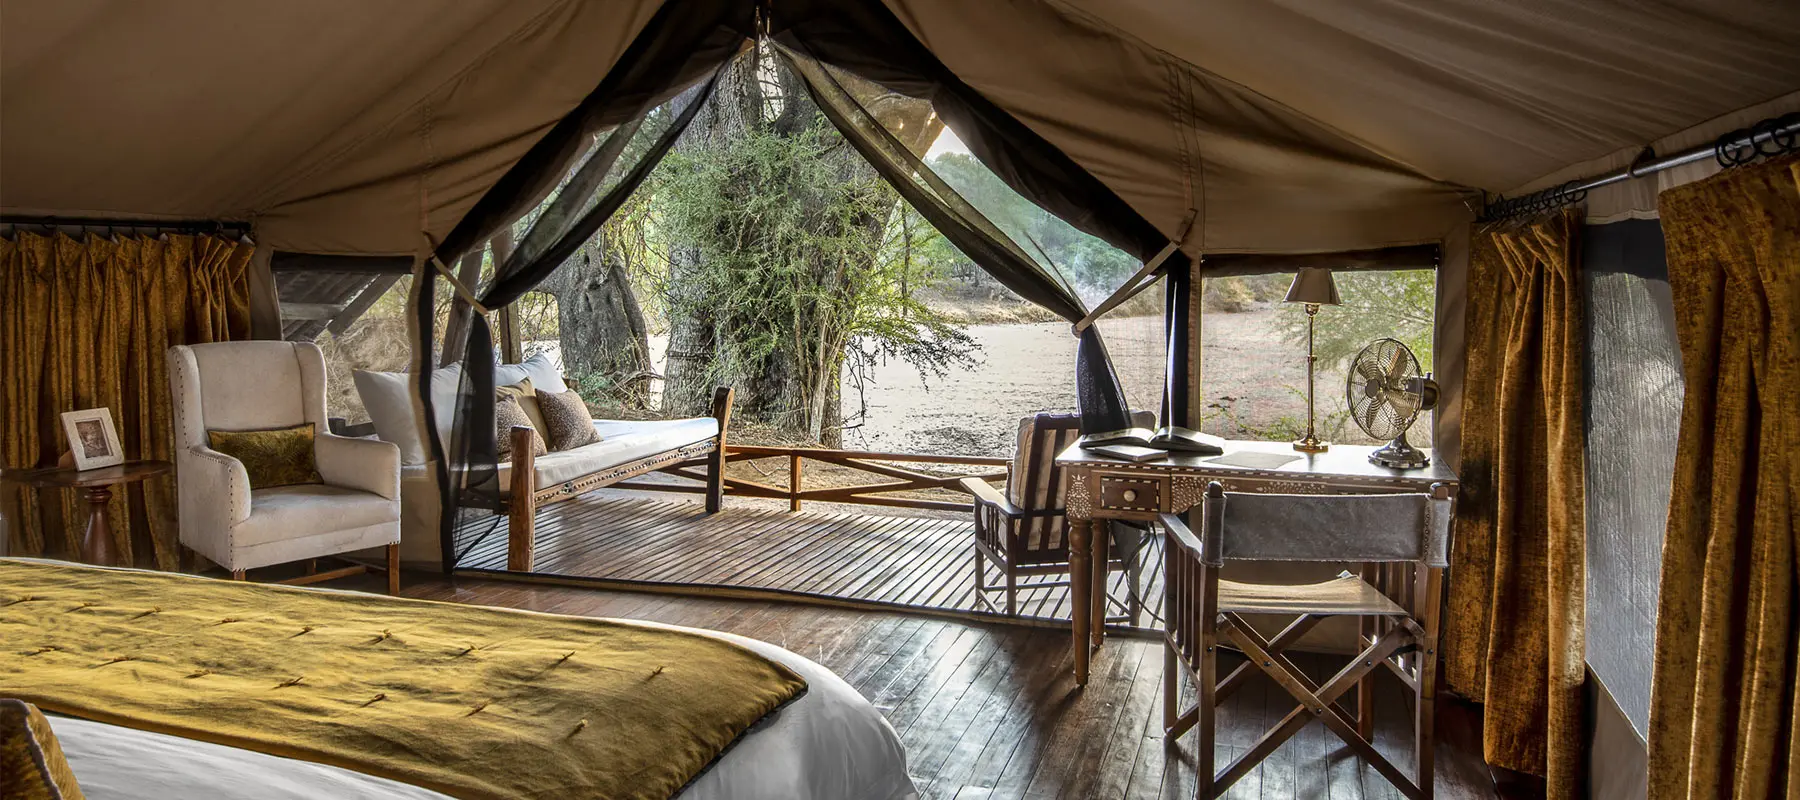 Where to stay at Safari Ruaha National Park